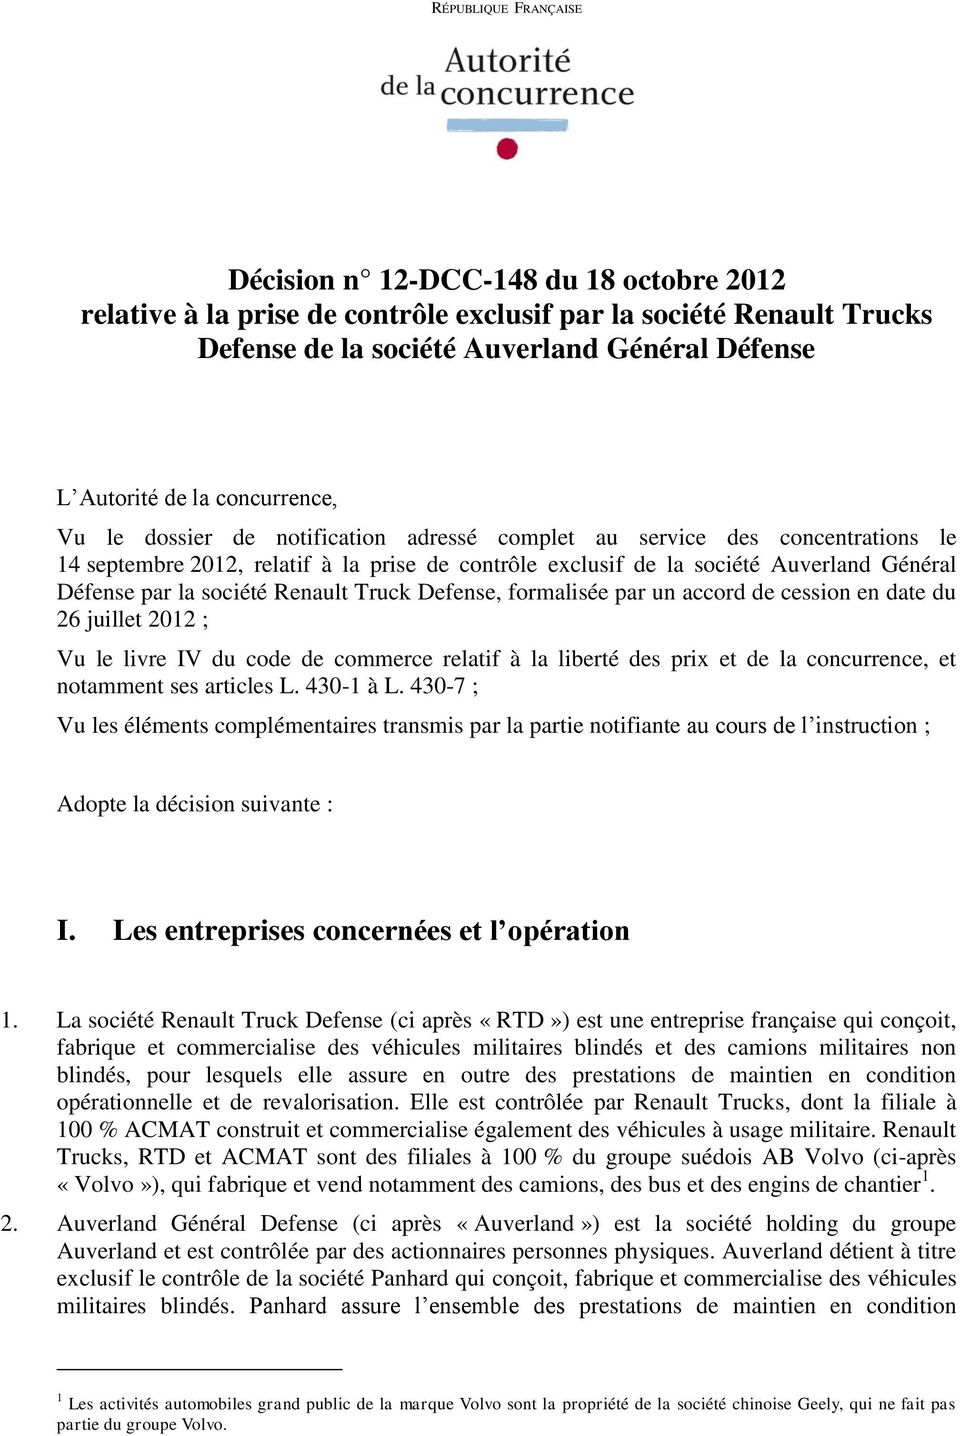 société Renault Truck Defense, formalisée par un accord de cession en date du 26 juillet 2012 ; Vu le livre IV du code de commerce relatif à la liberté des prix et de la concurrence, et notamment ses